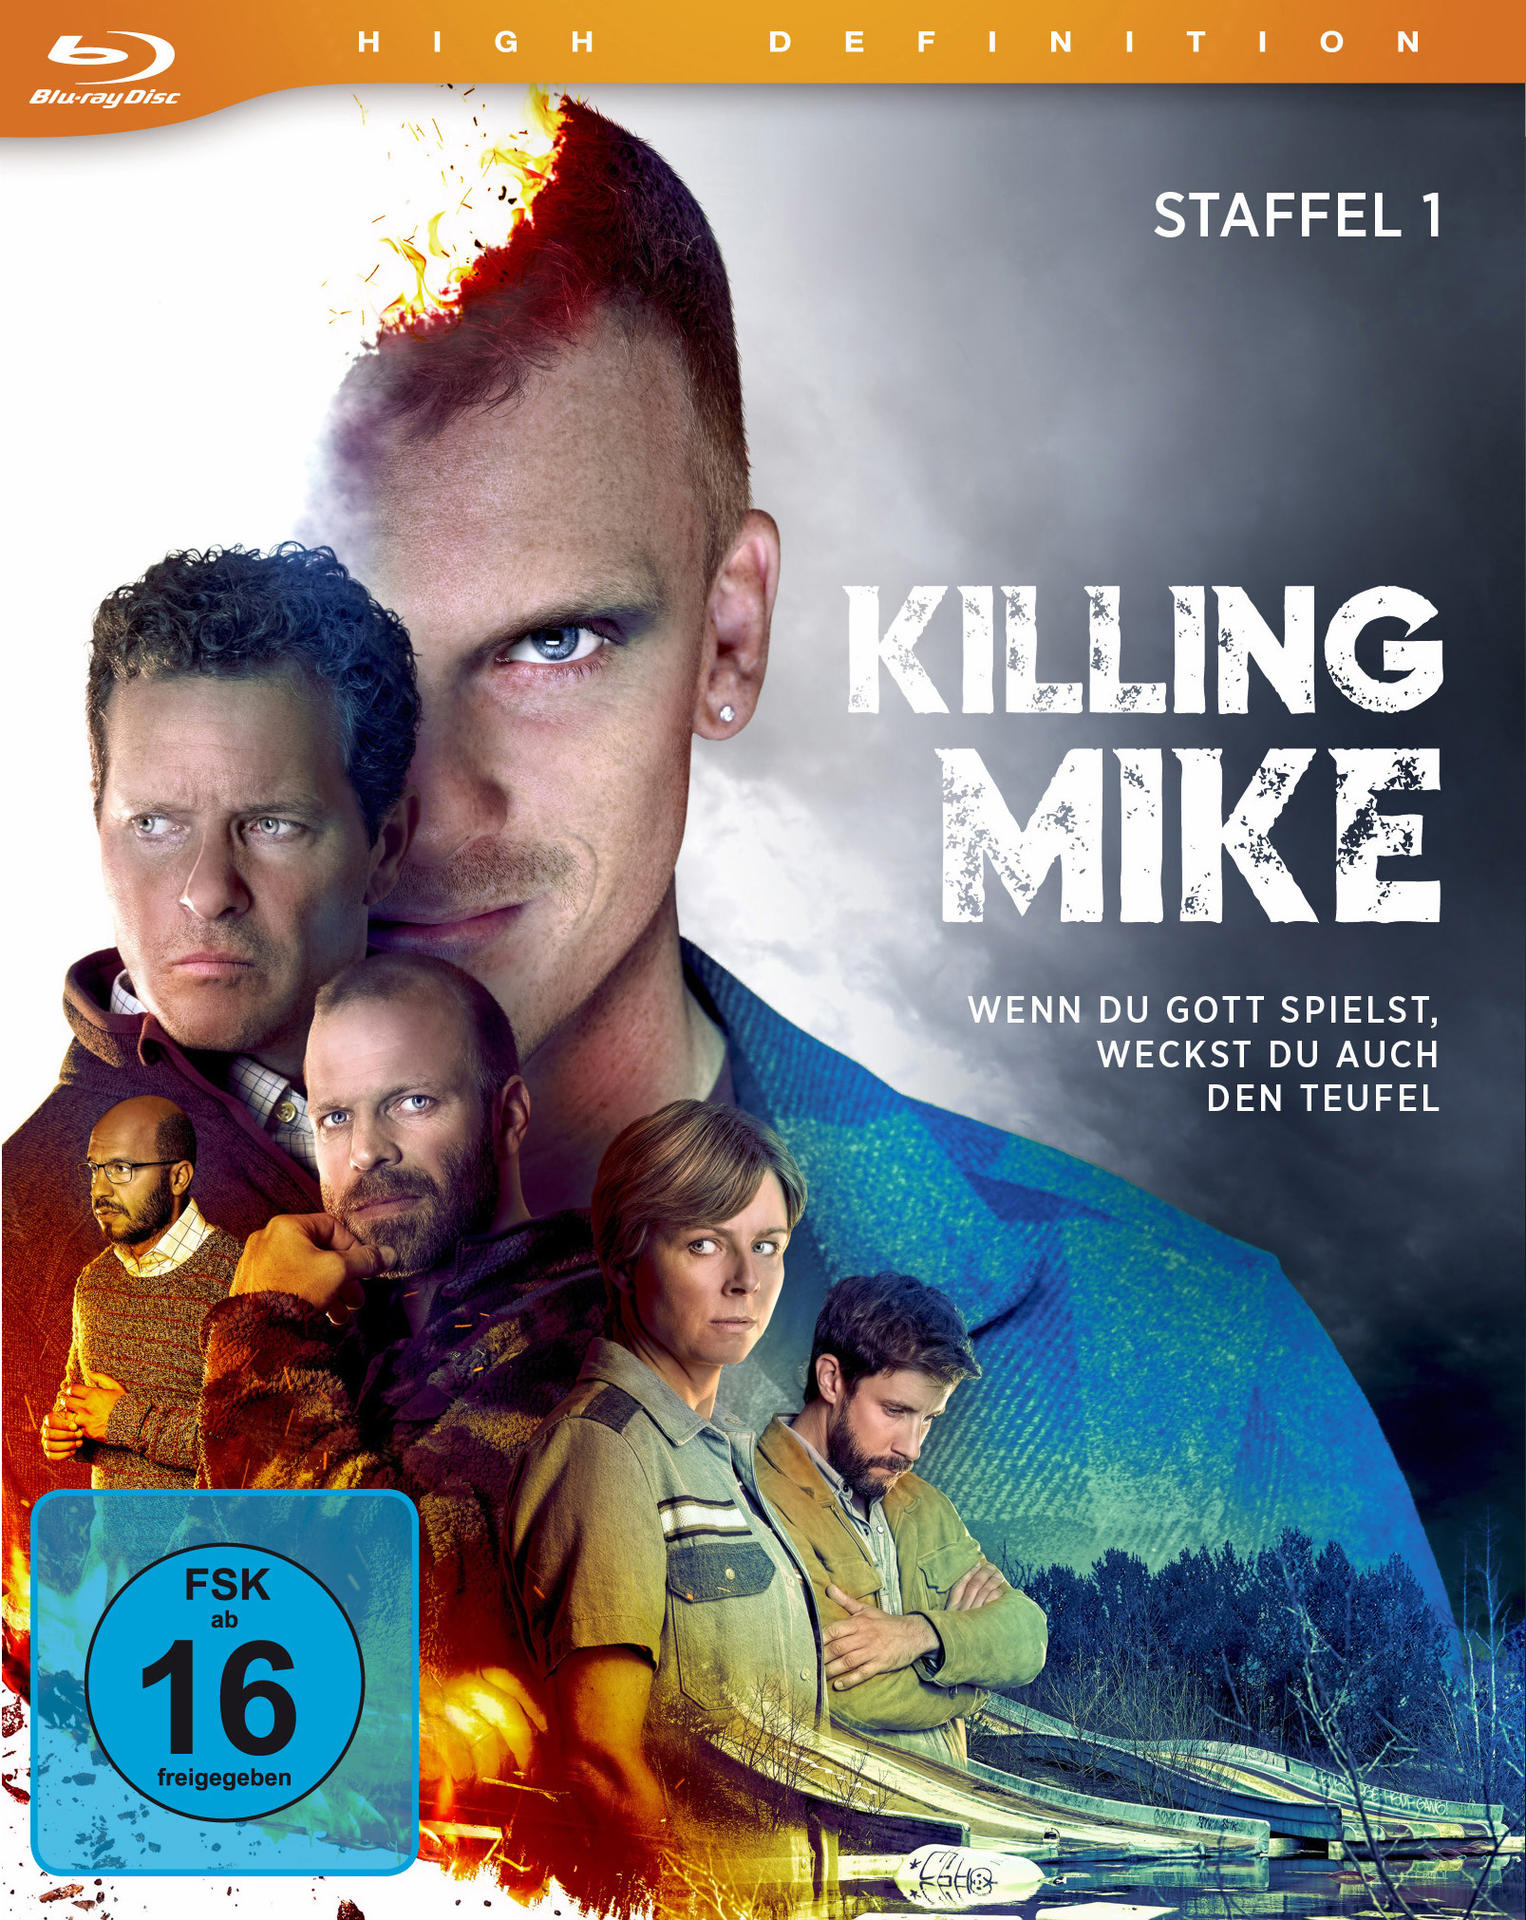 - 1 Killing Blu-ray Mike Staffel